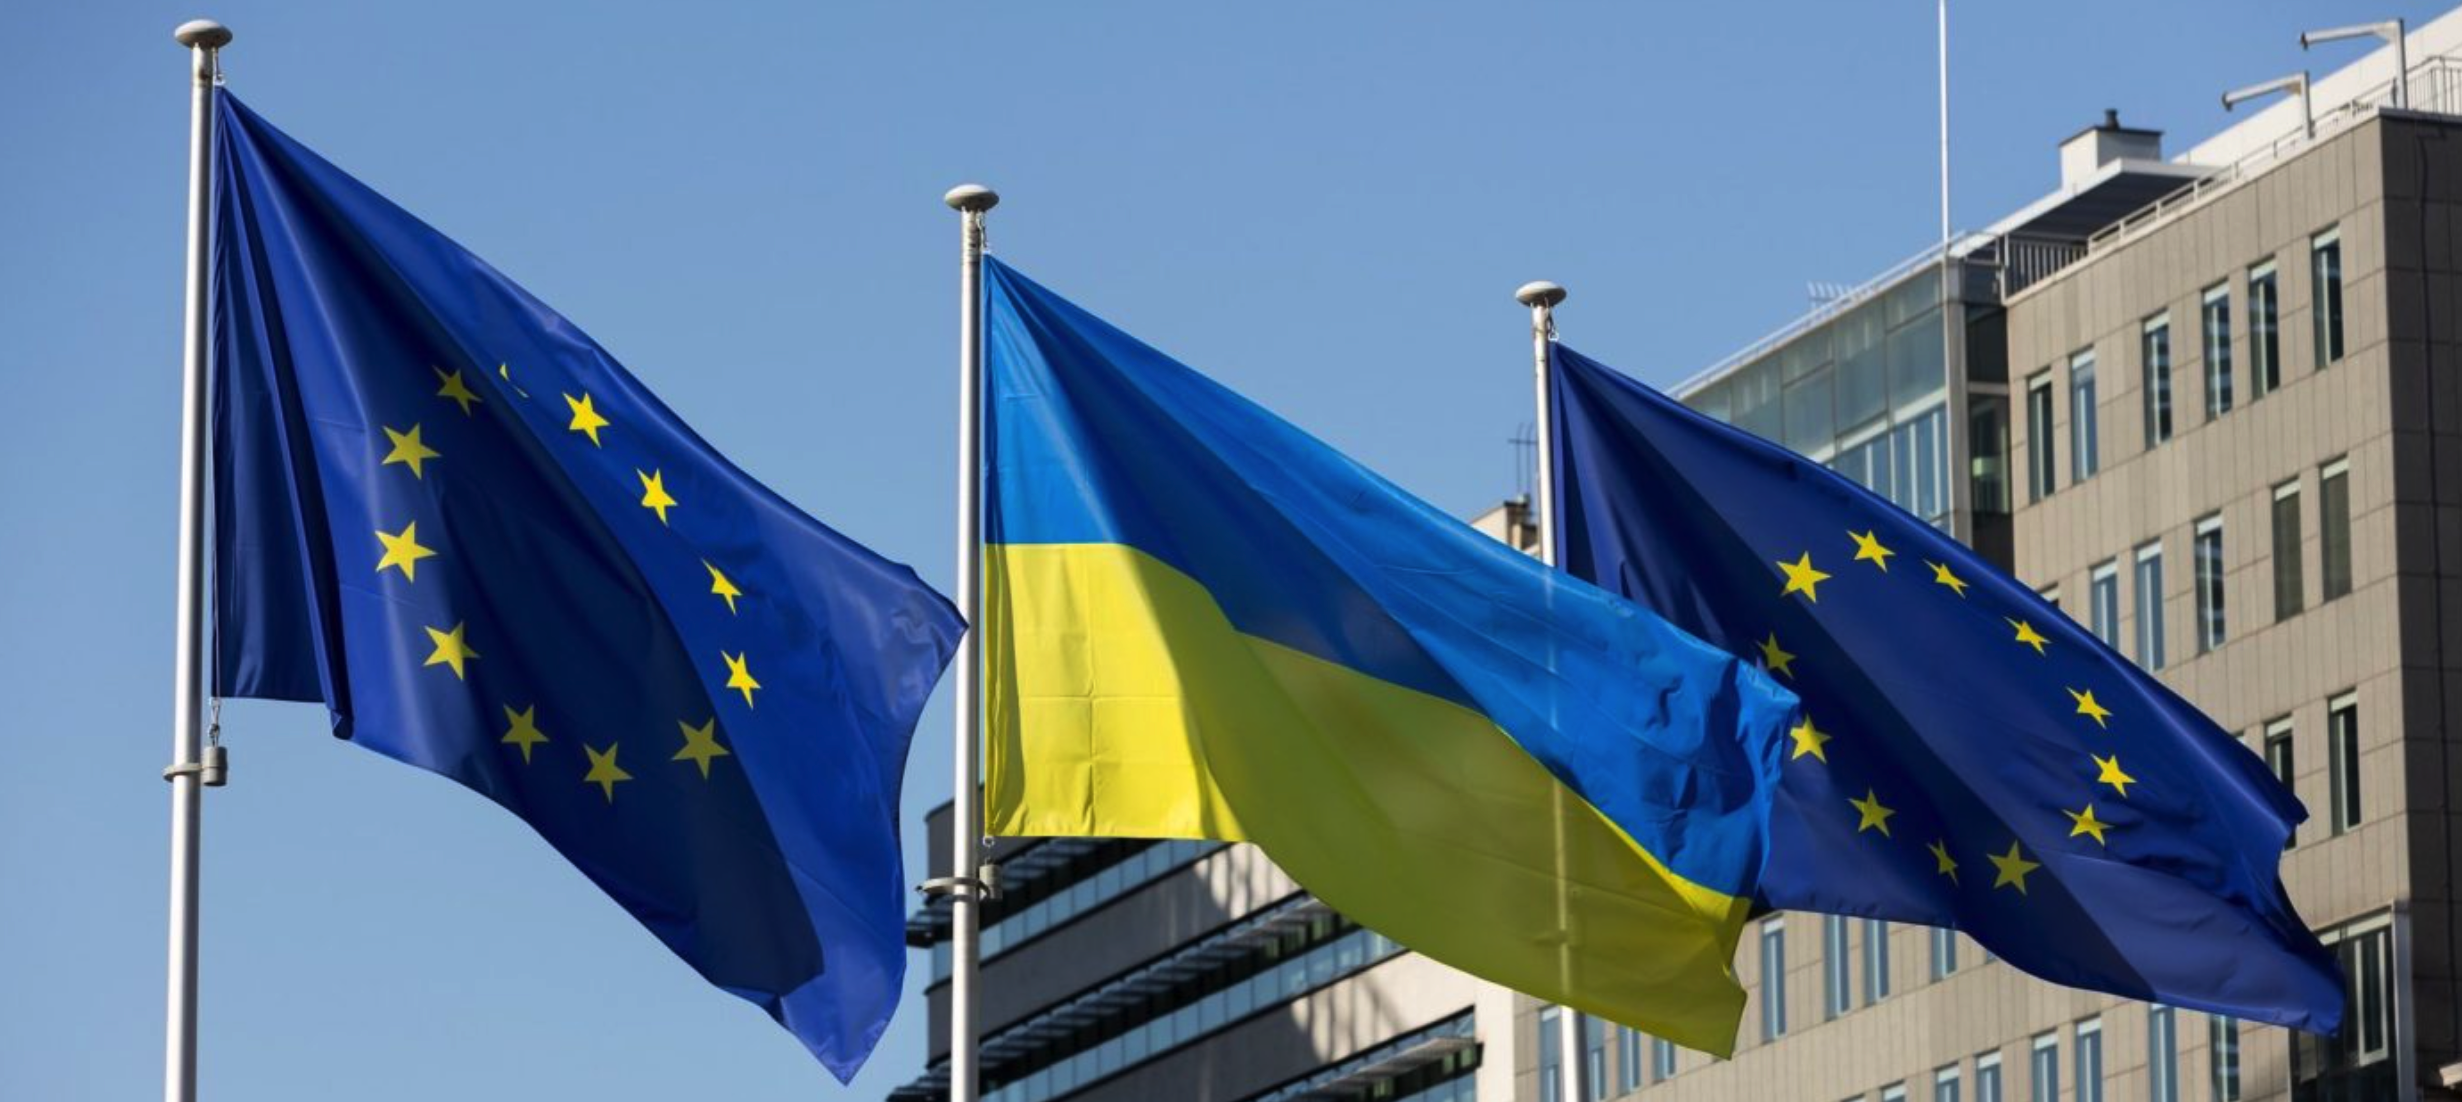 Євросоюз погодив 5 млрд євро на оборону для України